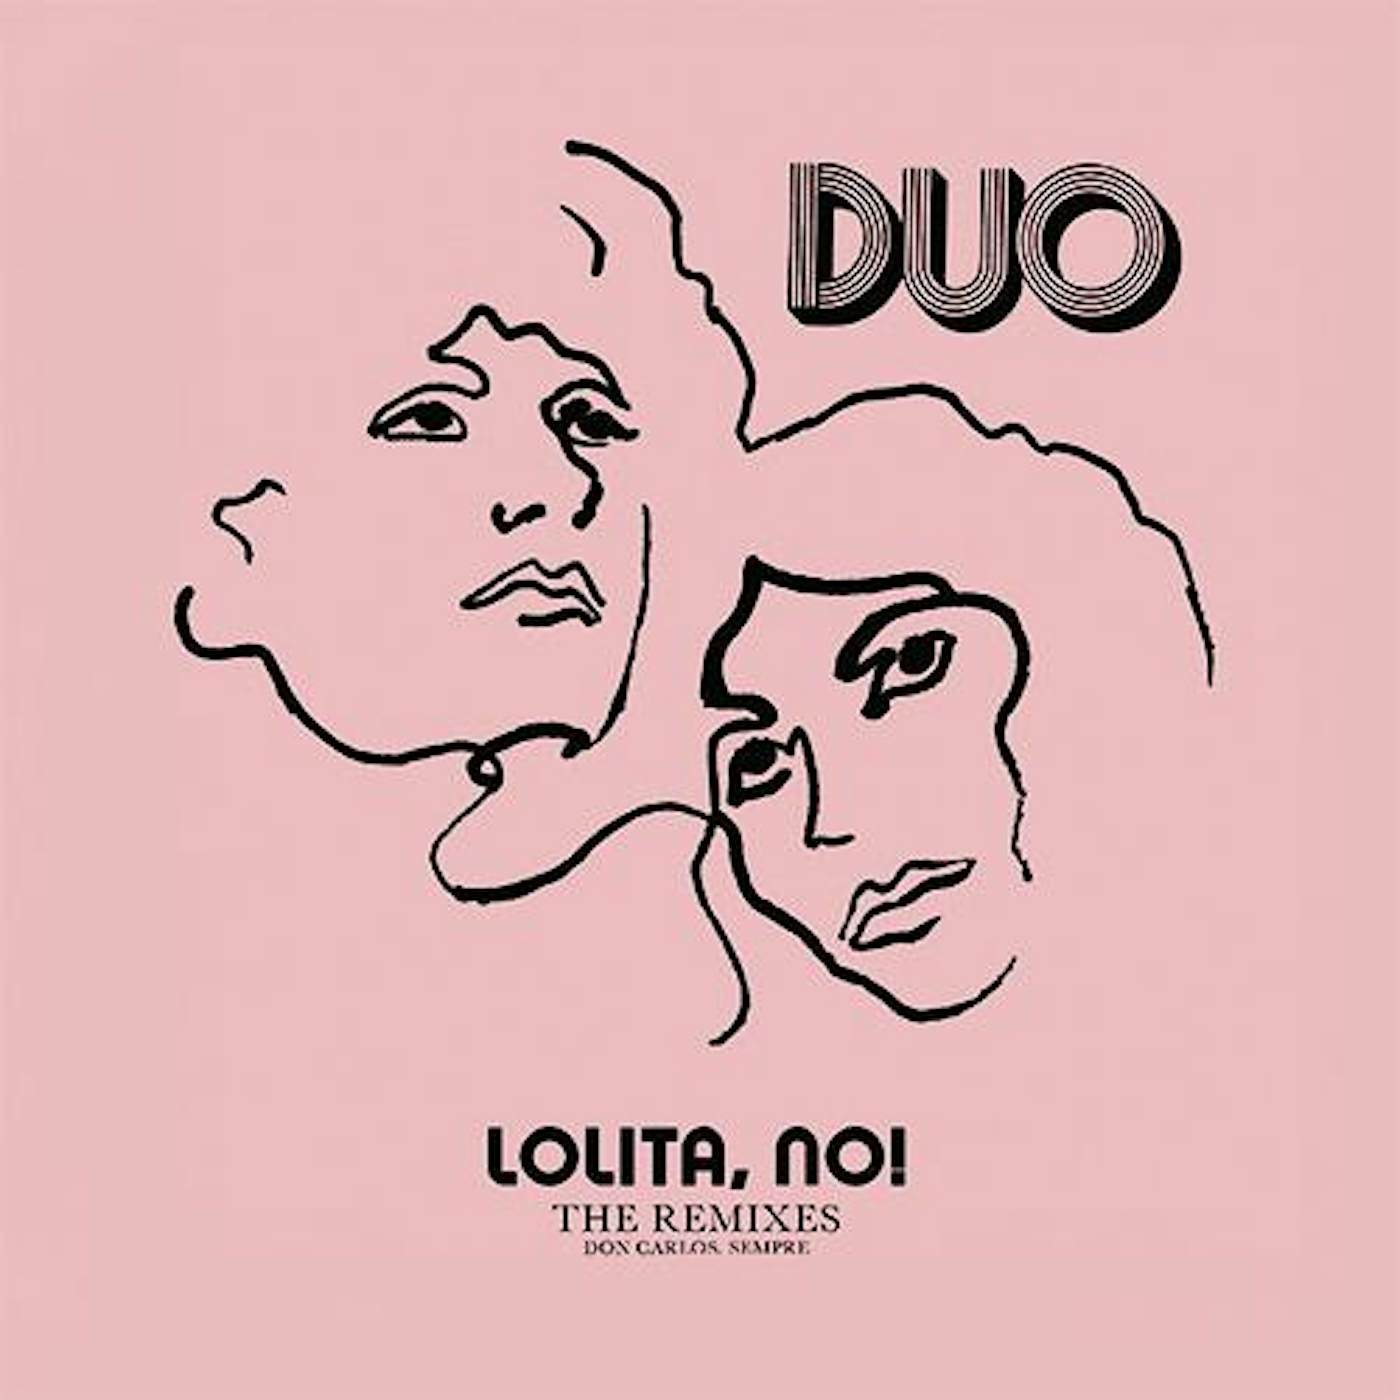 DUO LOLITA NO: THE REMIXES Vinyl Record